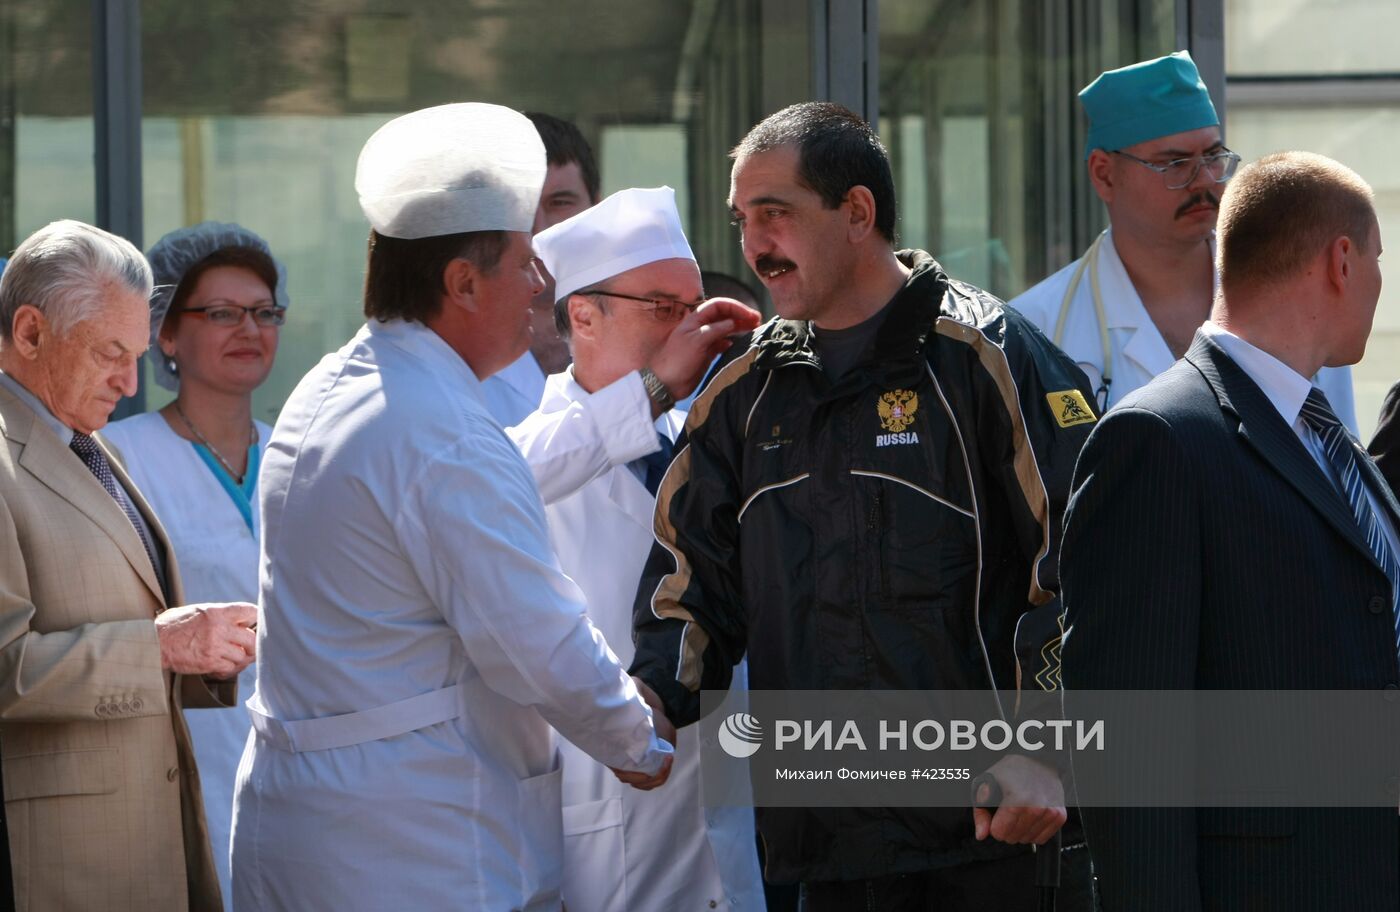 Президент Ингушетии Ю.-Б. Евкуров выписан из больницы